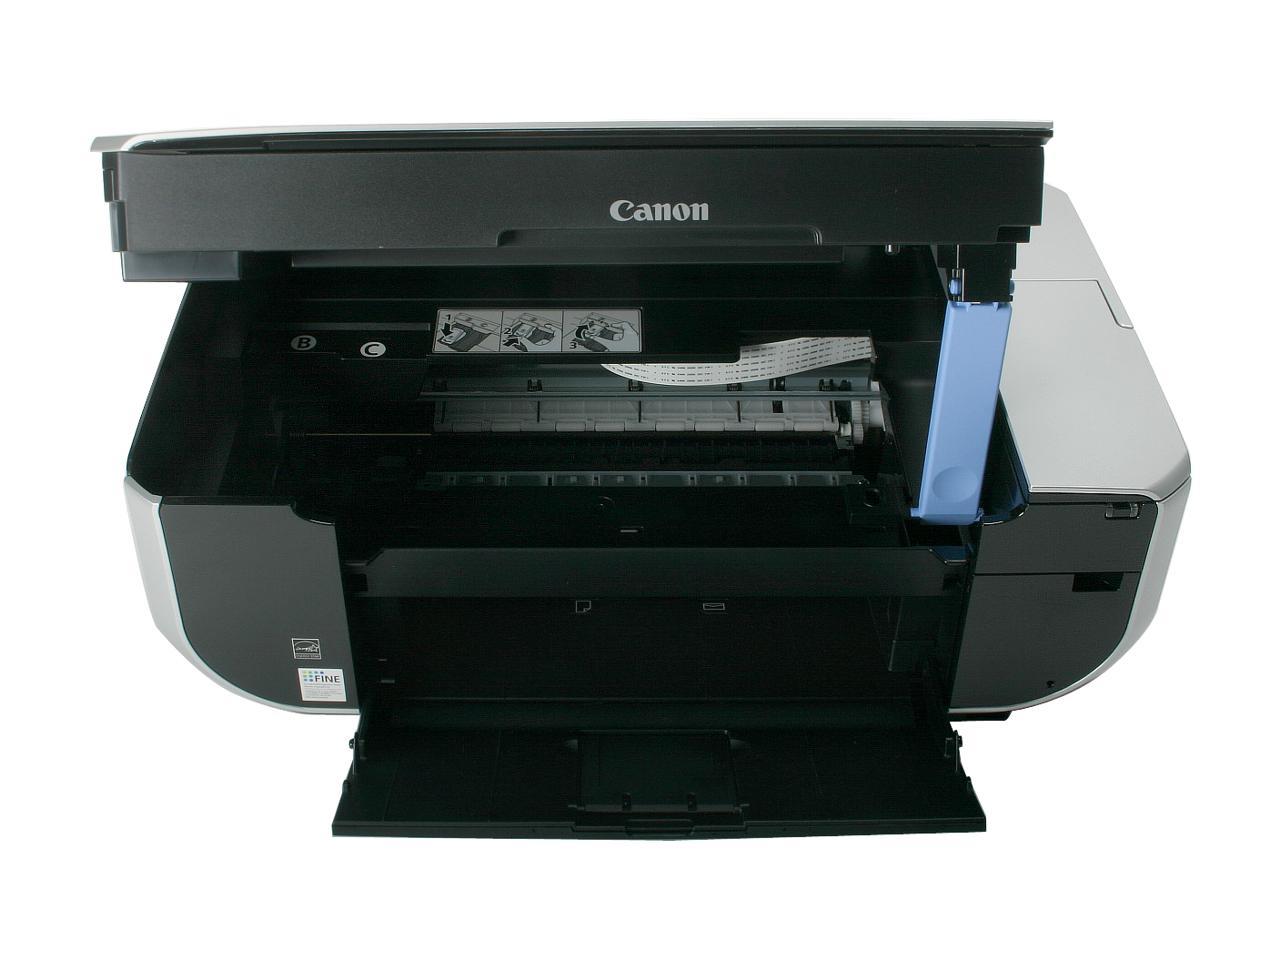 canon mp470 printer driver for mac